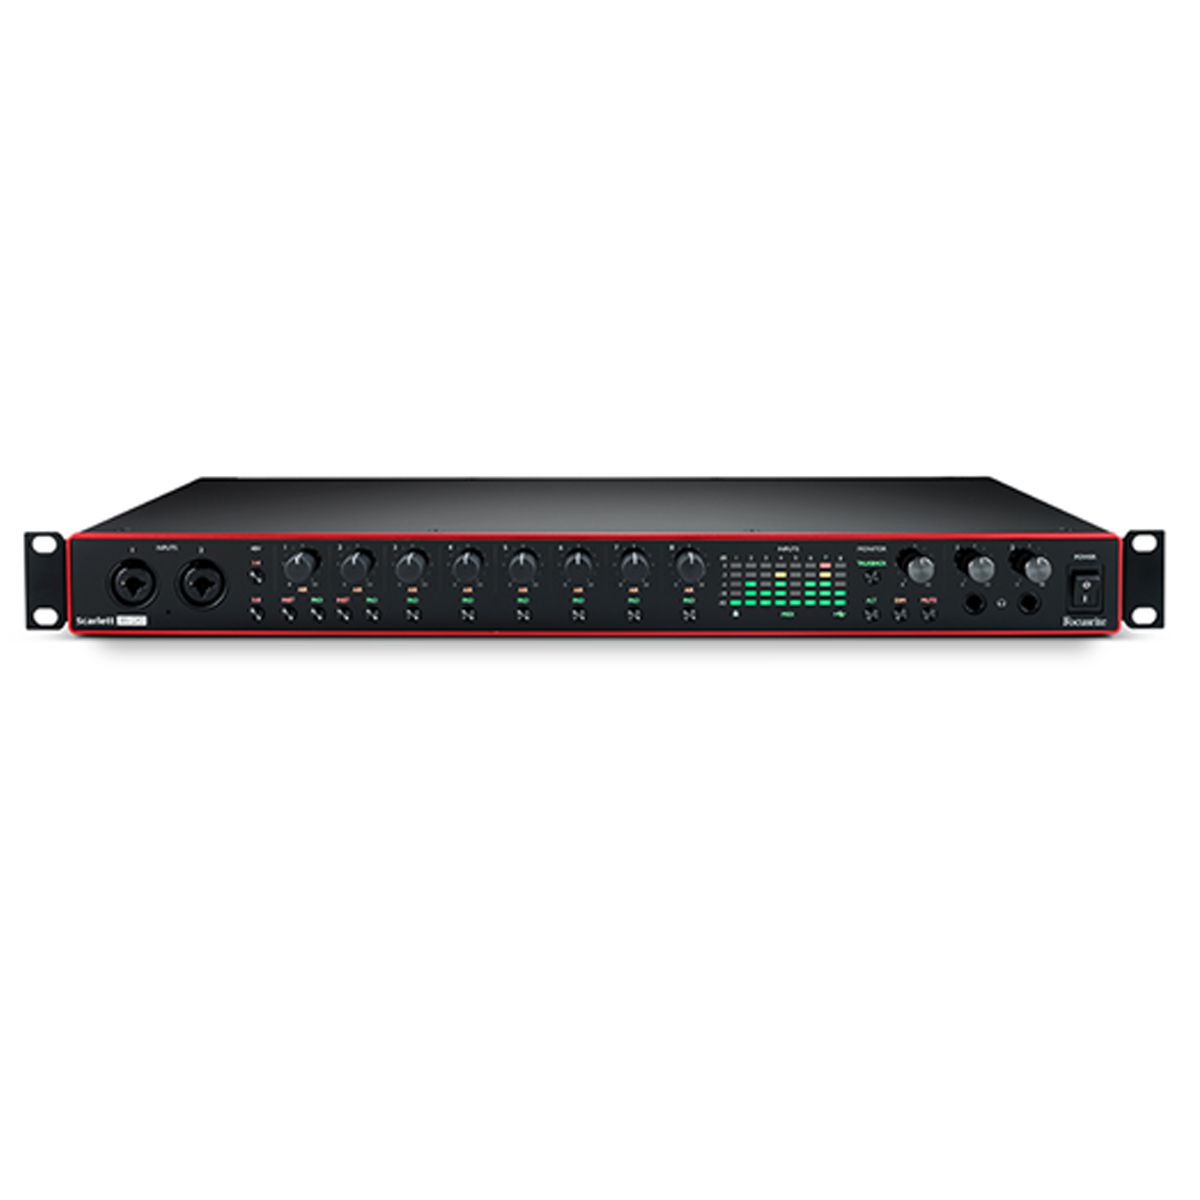 Interface USB padrão Rack 19'' de 8 canais com pré-amplificadores, conexão MIDI, S/PDIF, Word Clock e Optical | Focusrite | Scarlett 18i20 3nd Geração